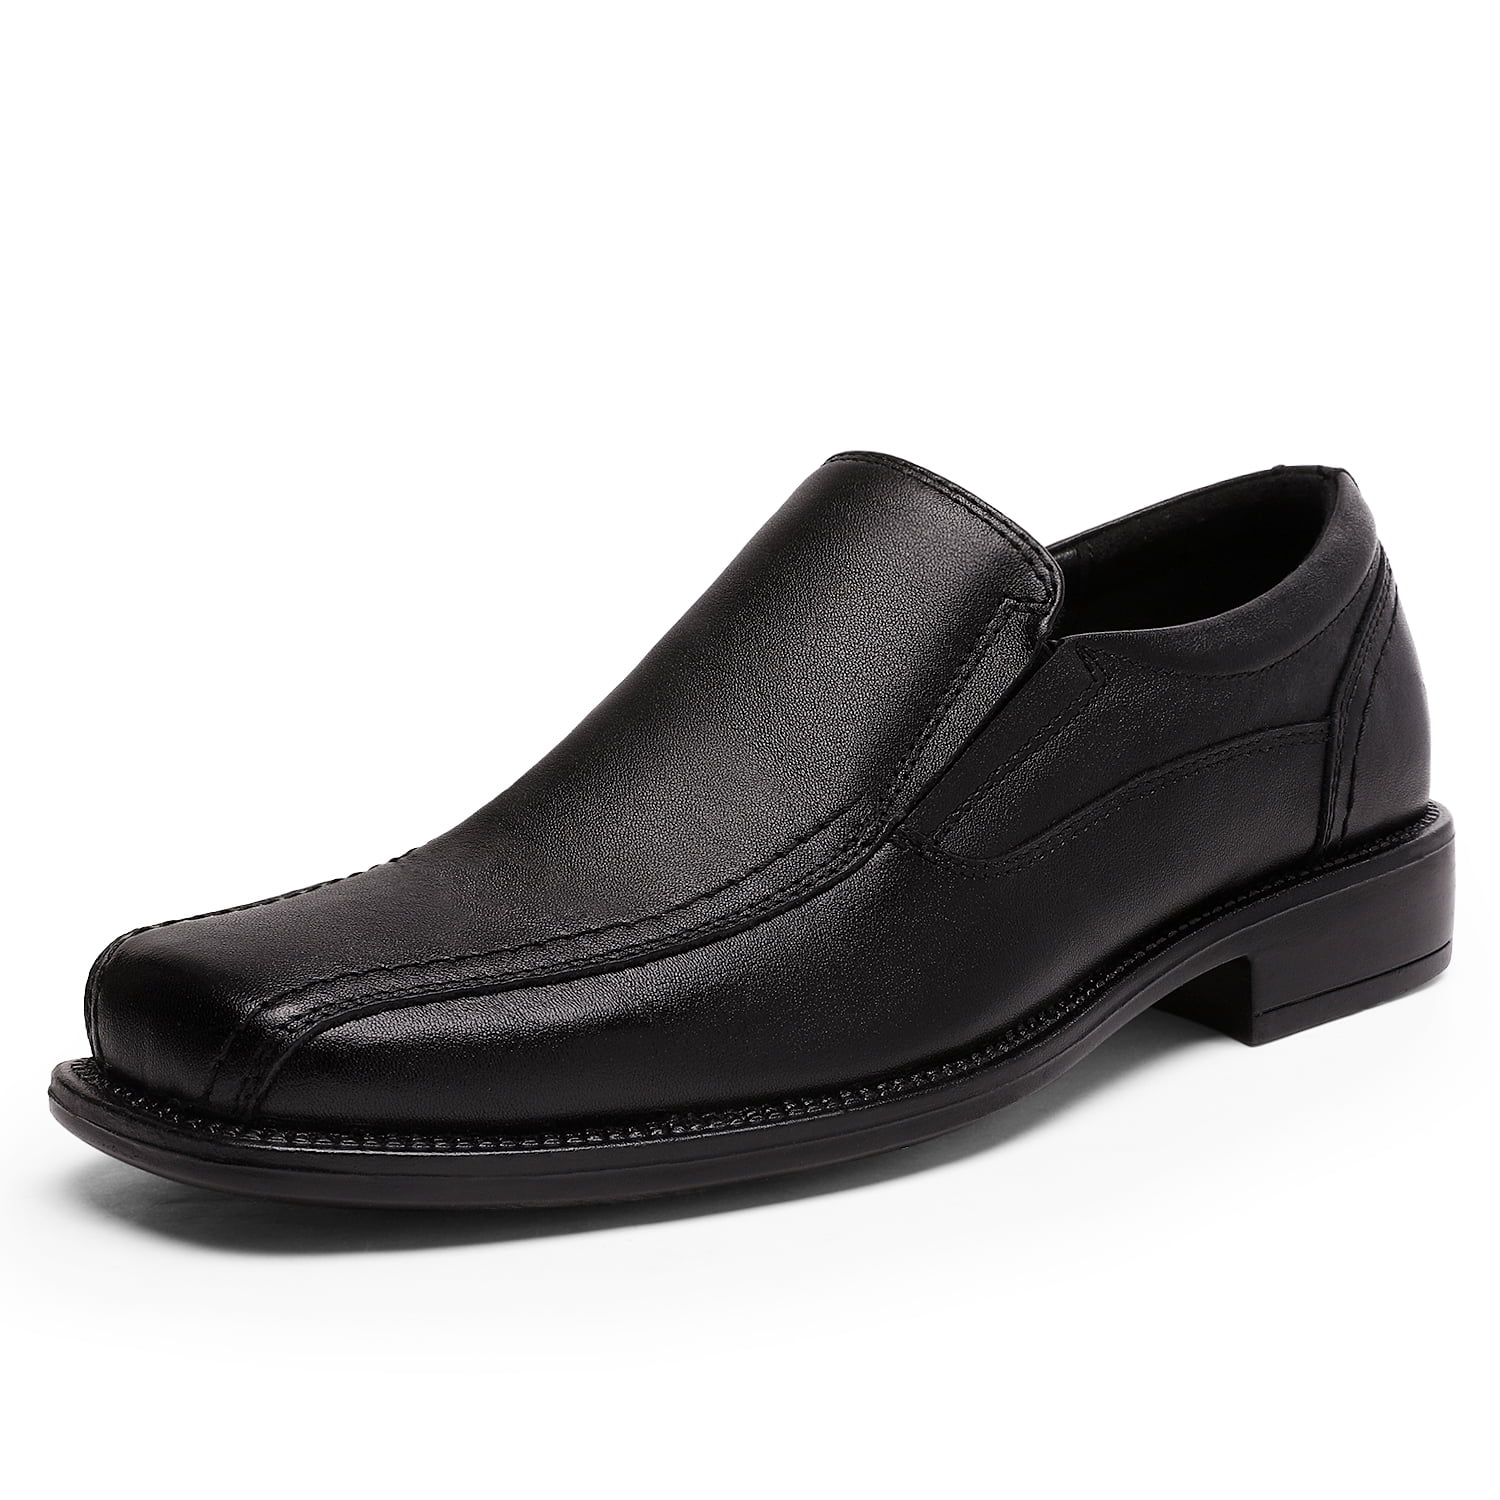 comfortable black men's dress shoes